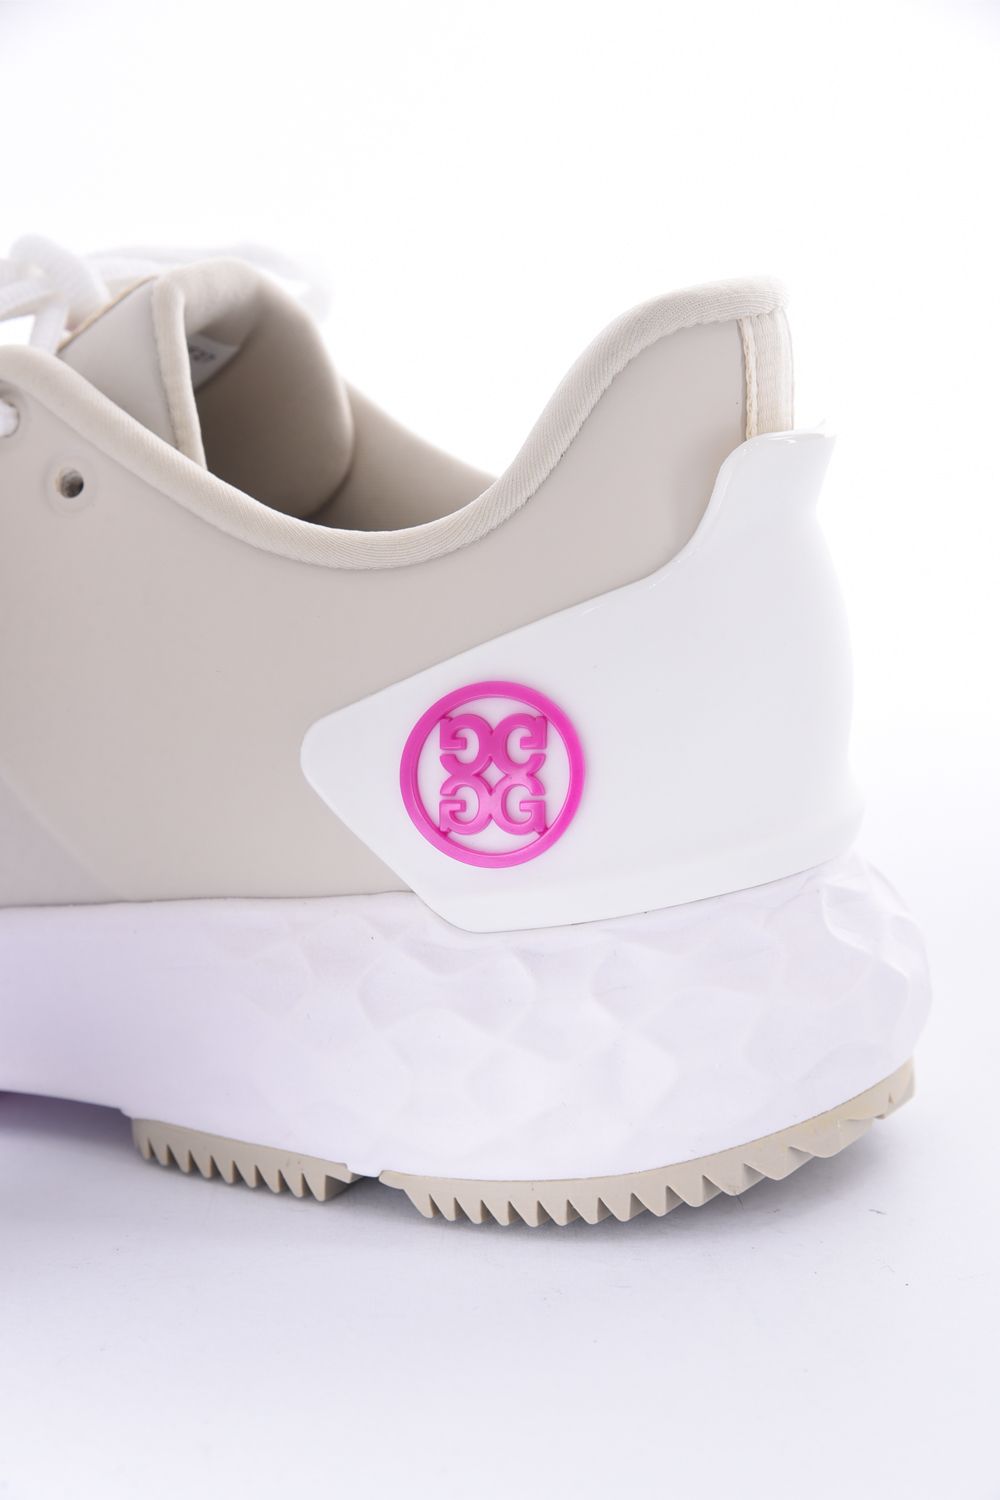 WOMENS MG4+ / スパイクレス ゴルフシューズ ベージュ×ホワイト×ピンク・ベージュ レディース - US6.5(23.0)